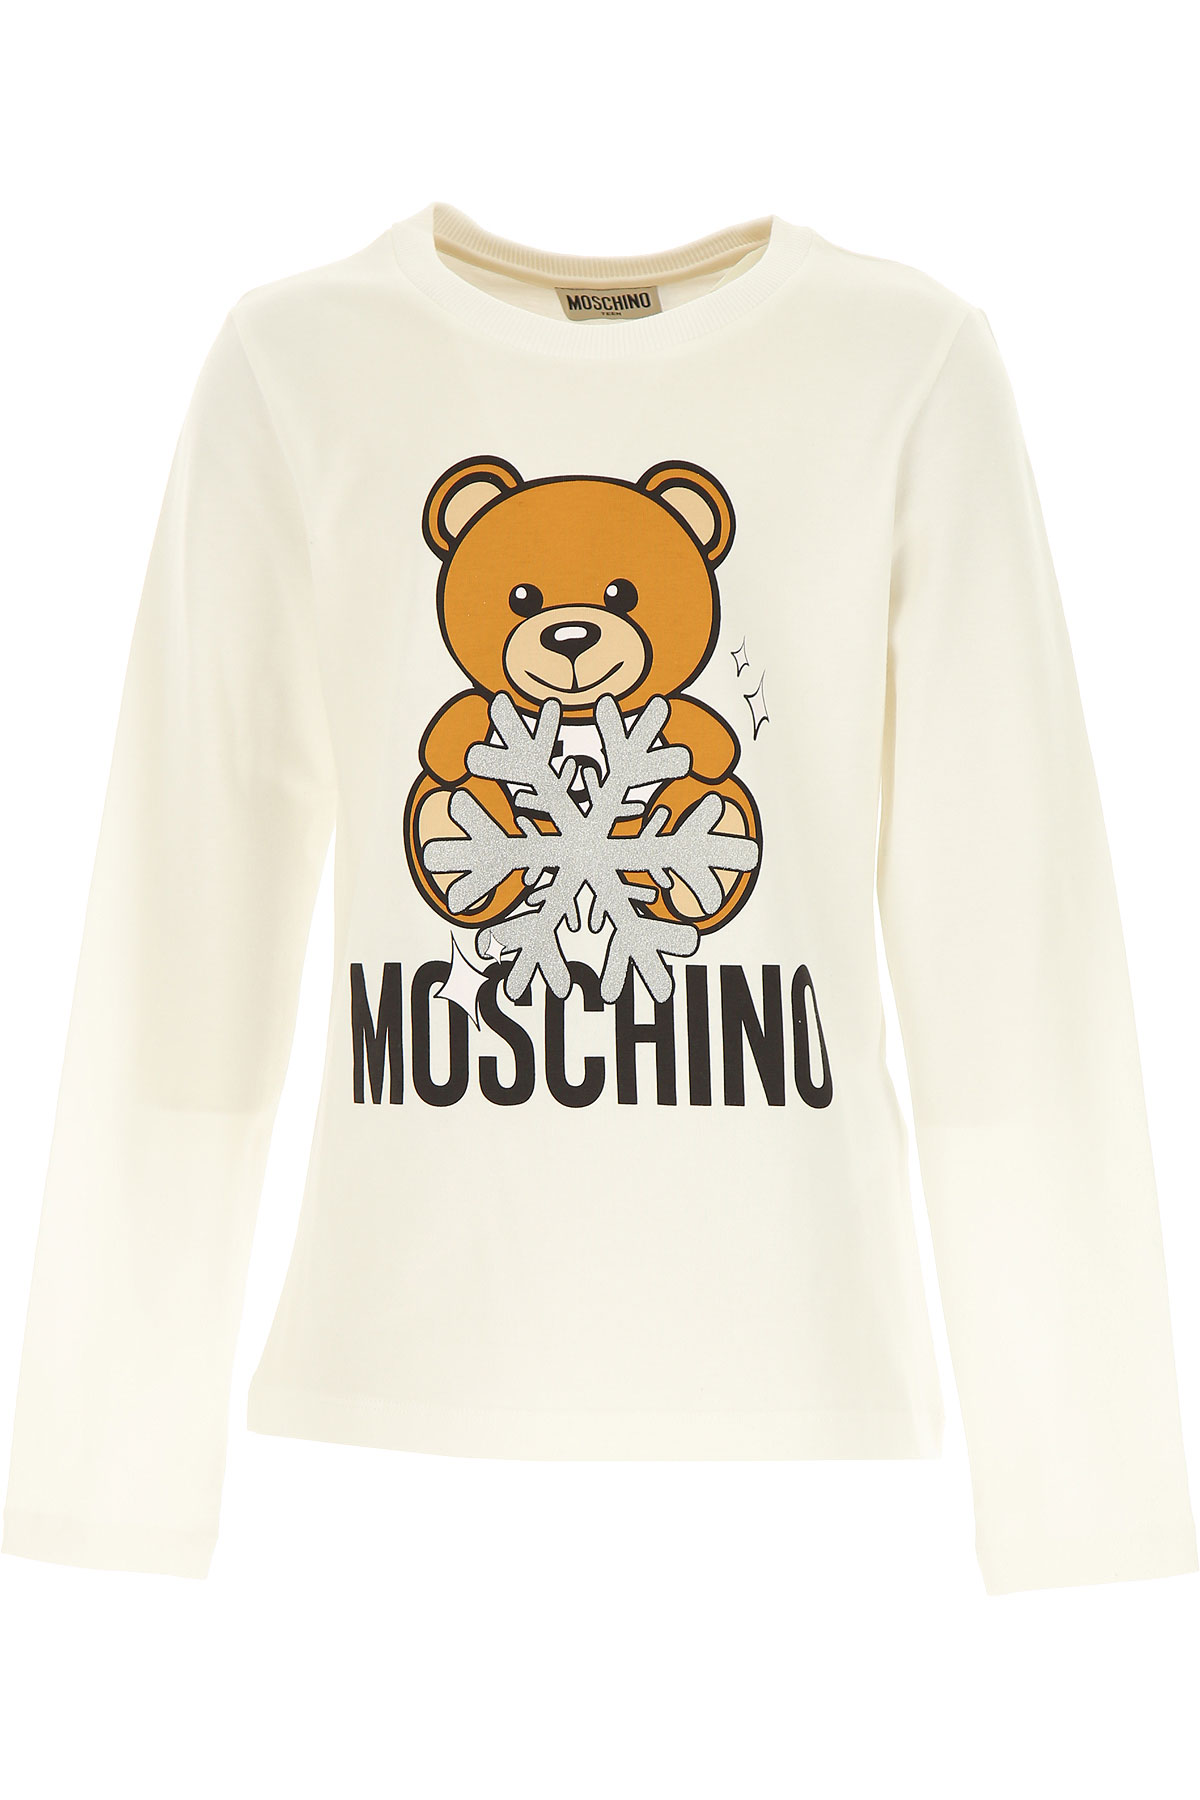 Moschino Kinder T-Shirt für Mädchen Günstig im Sale, Weiss, Baumwolle, 2017, 12Y 4Y 5Y 6Y 8Y